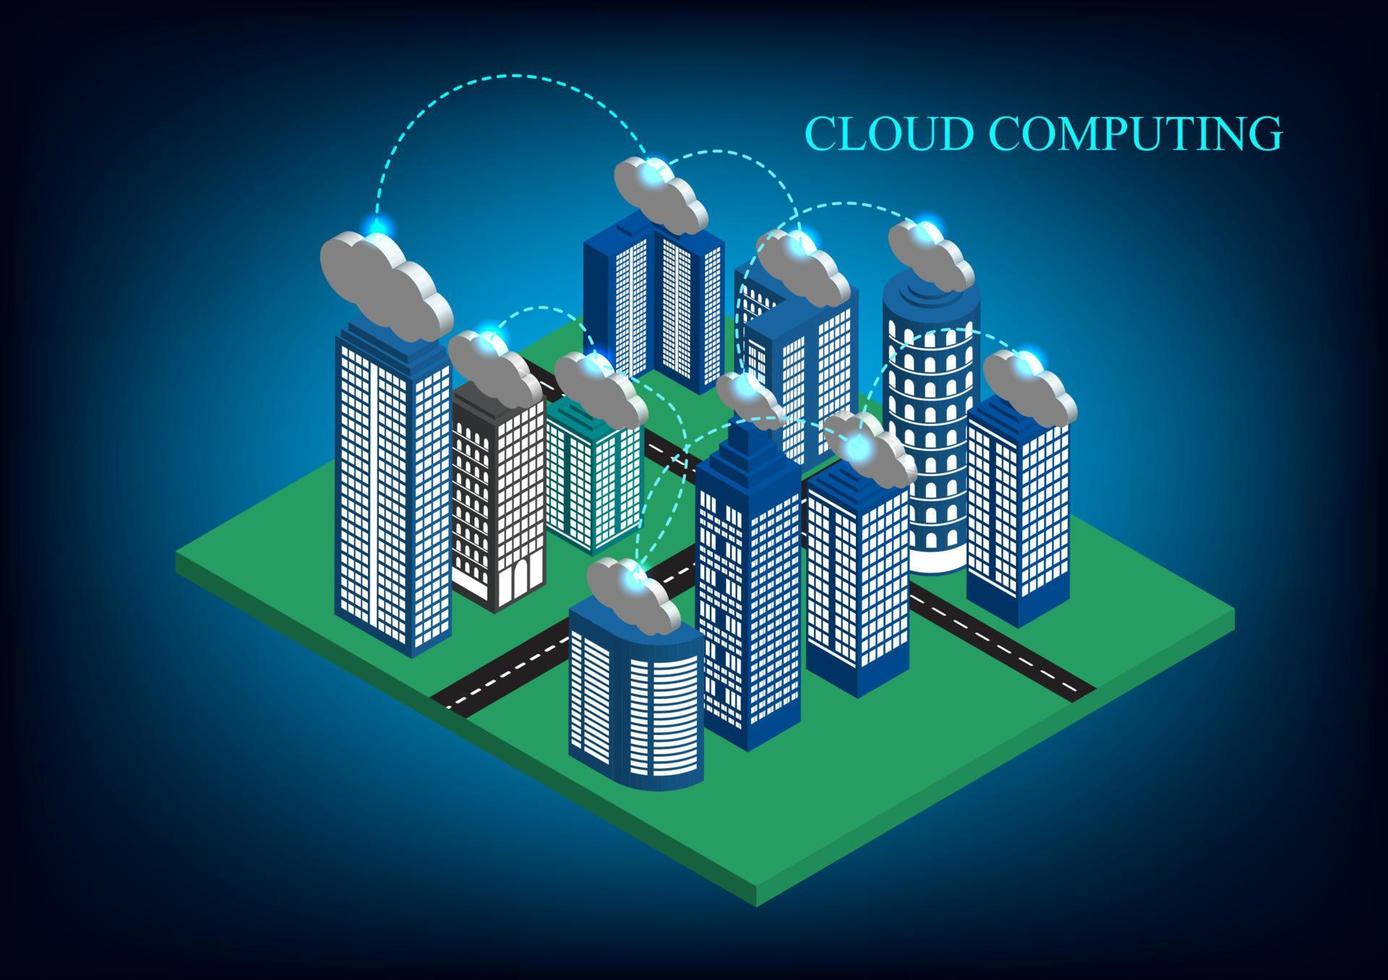 il isometrico piatto 3d città con grattacieli e nuvole concetto Rete tecnologia nube calcolo dati Conservazione vettore illustratore